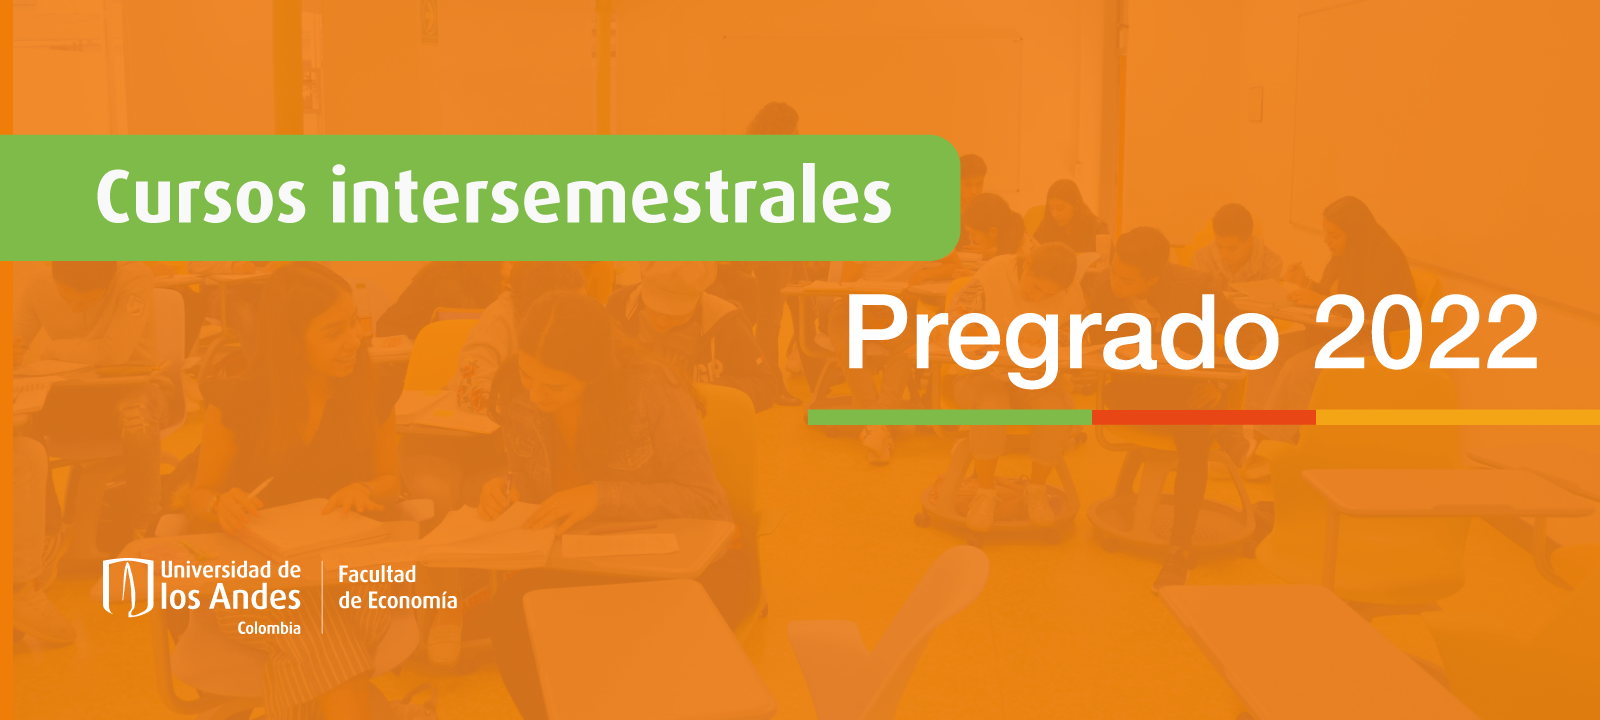 cursos-intersemestrales-pregrado-2022-desktop.png